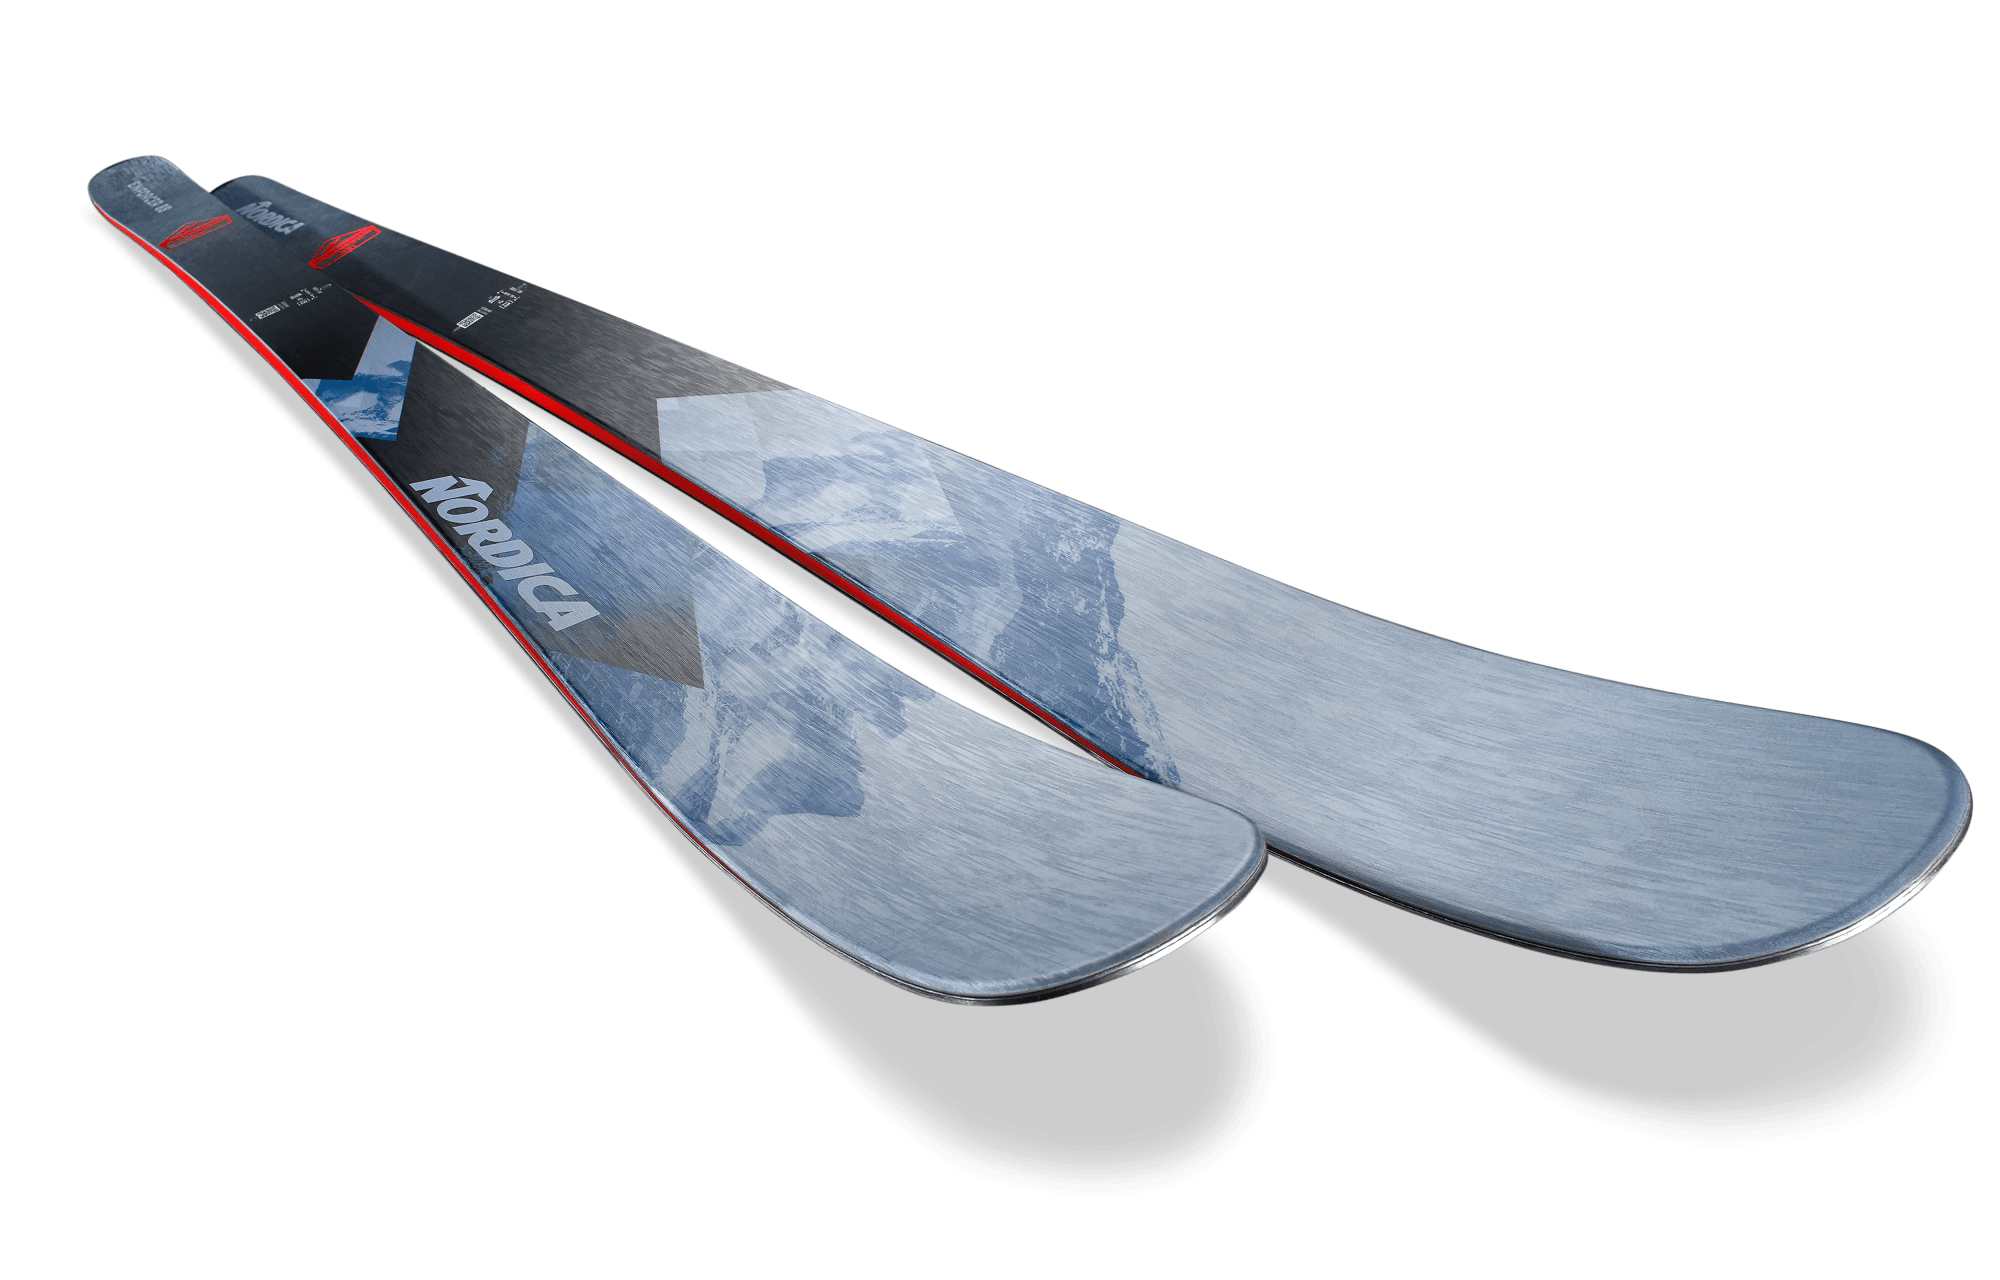 Nordica Enforcer 88 Skis · 2023